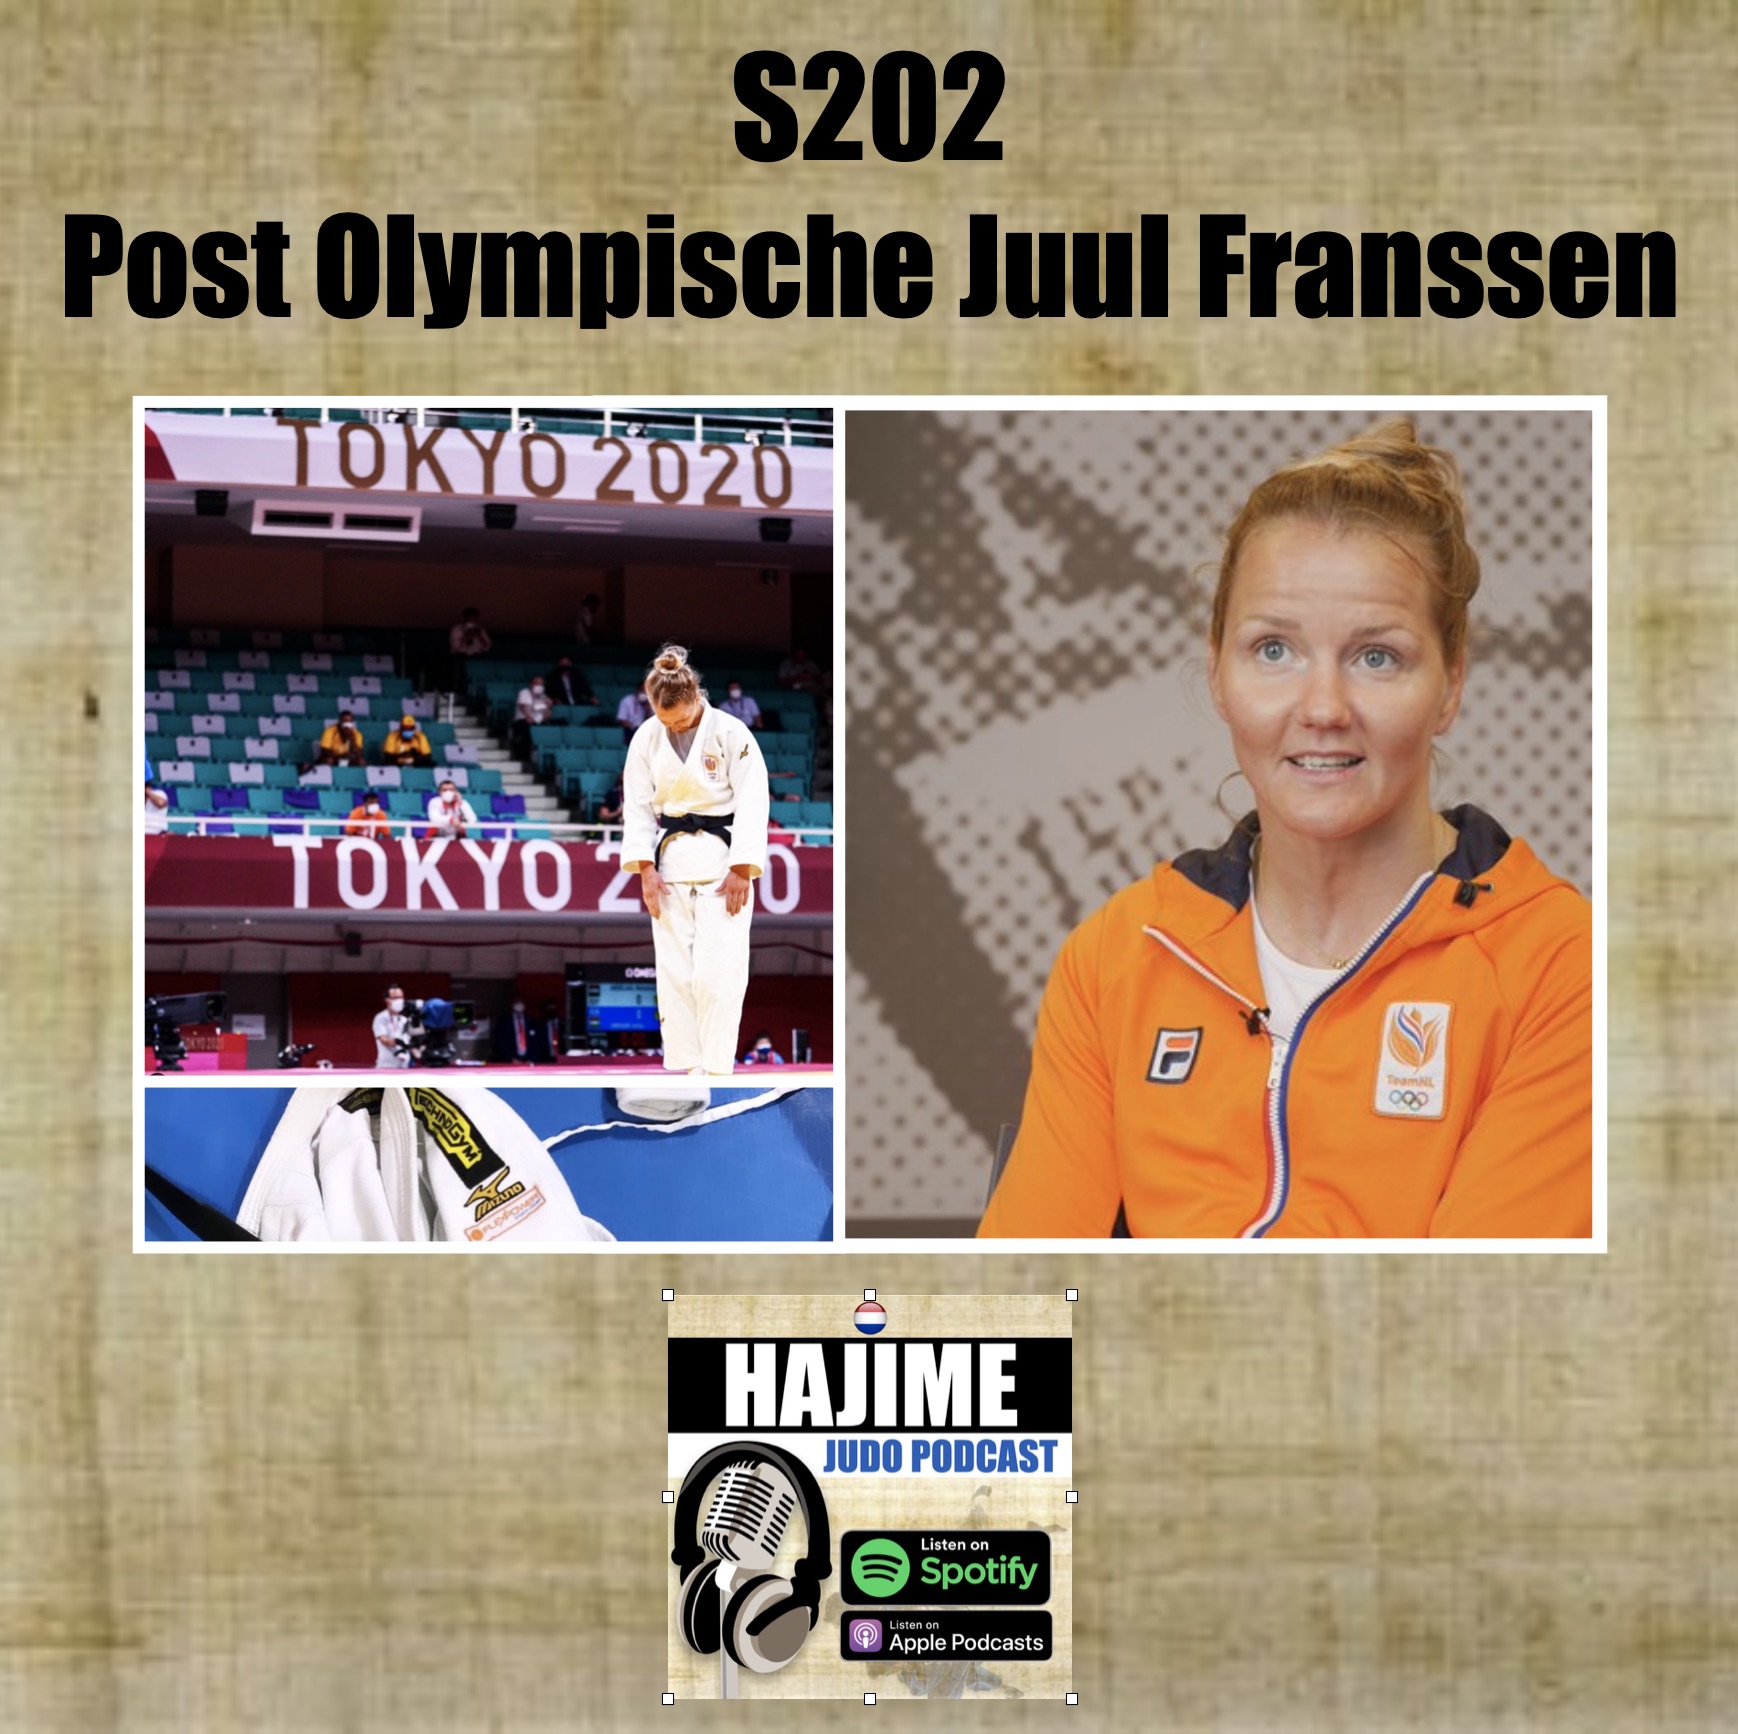 Hajime Judo Podcast – Seizoen 2 aflevering 2, Post Olympische Juul Franssen